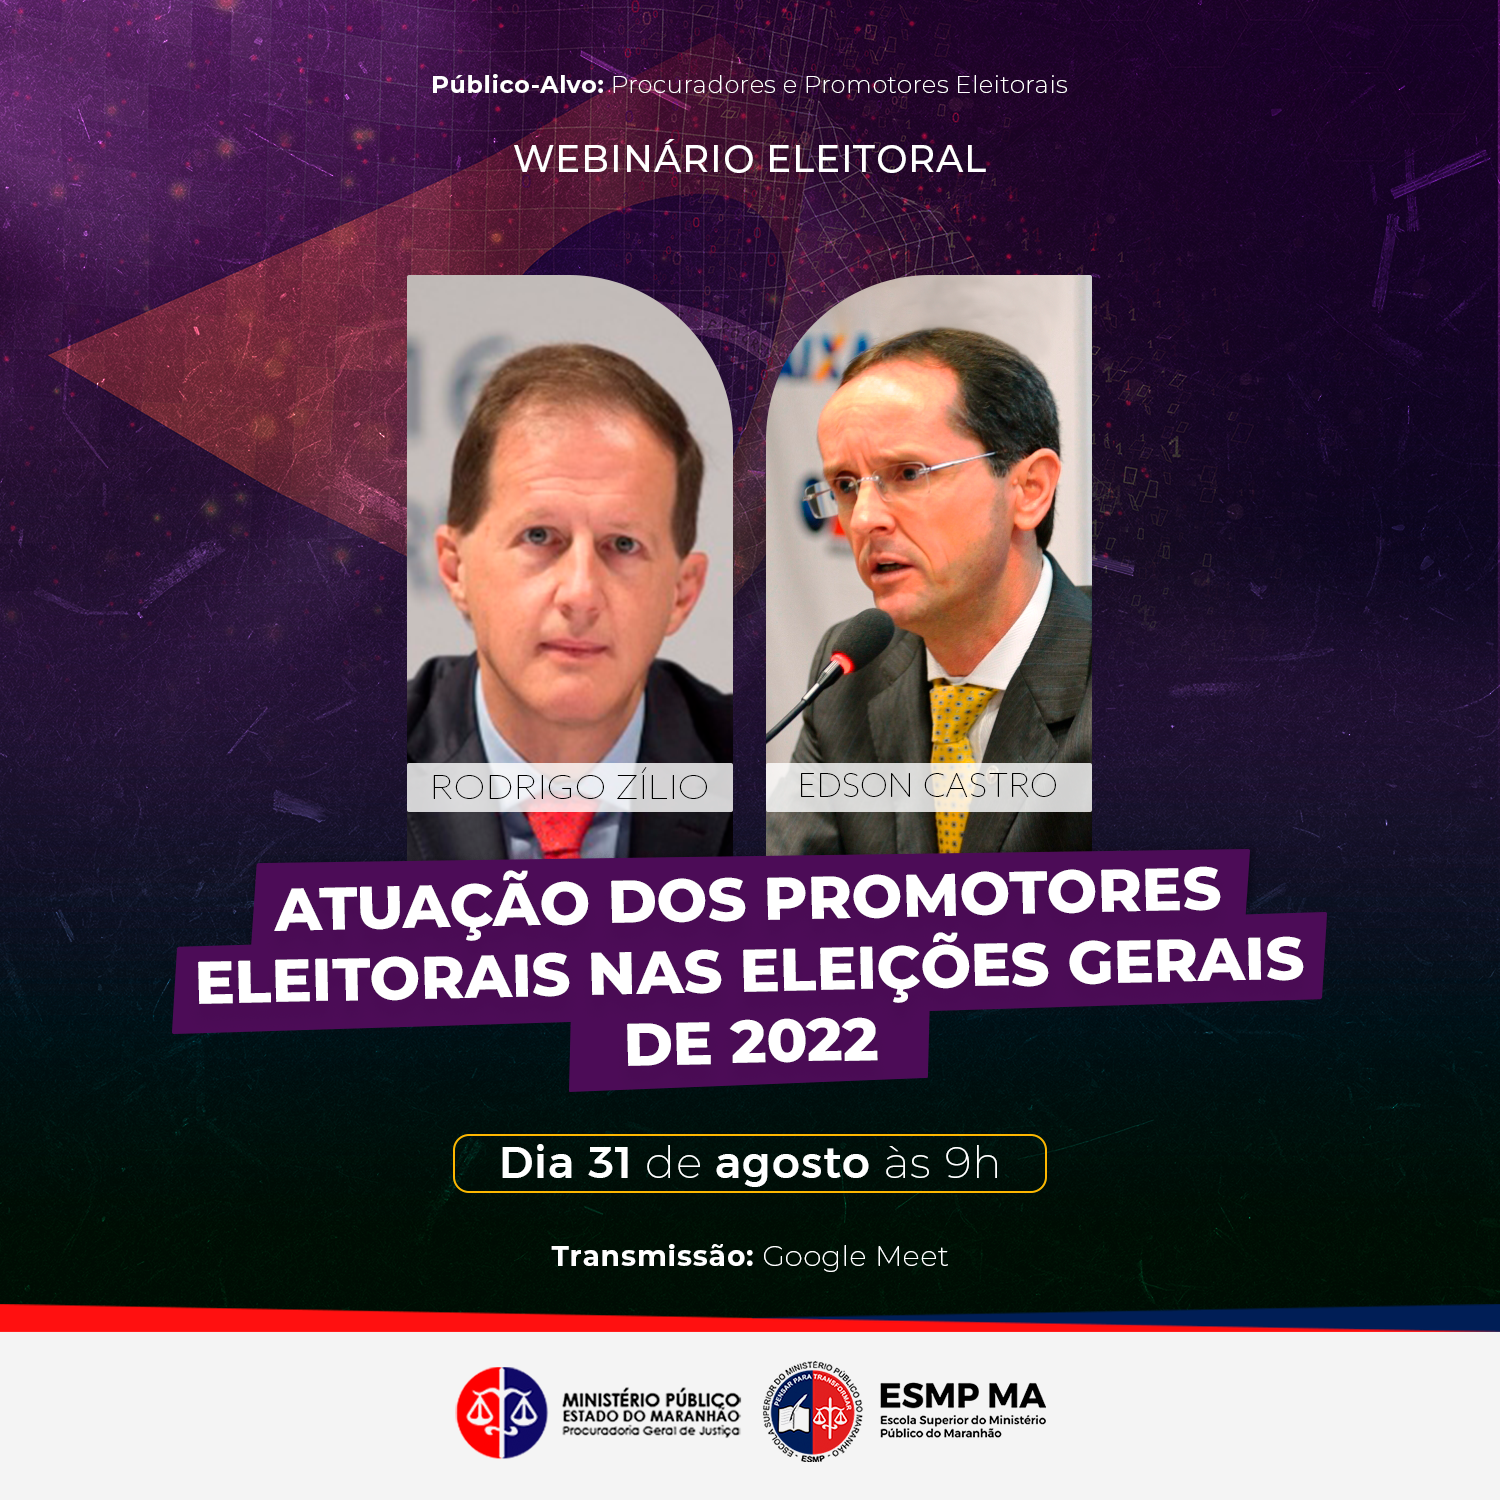 Webinário Eleitoral "Atuação dos Promotores Eleitorais nas Eleições Gerais de 2022"